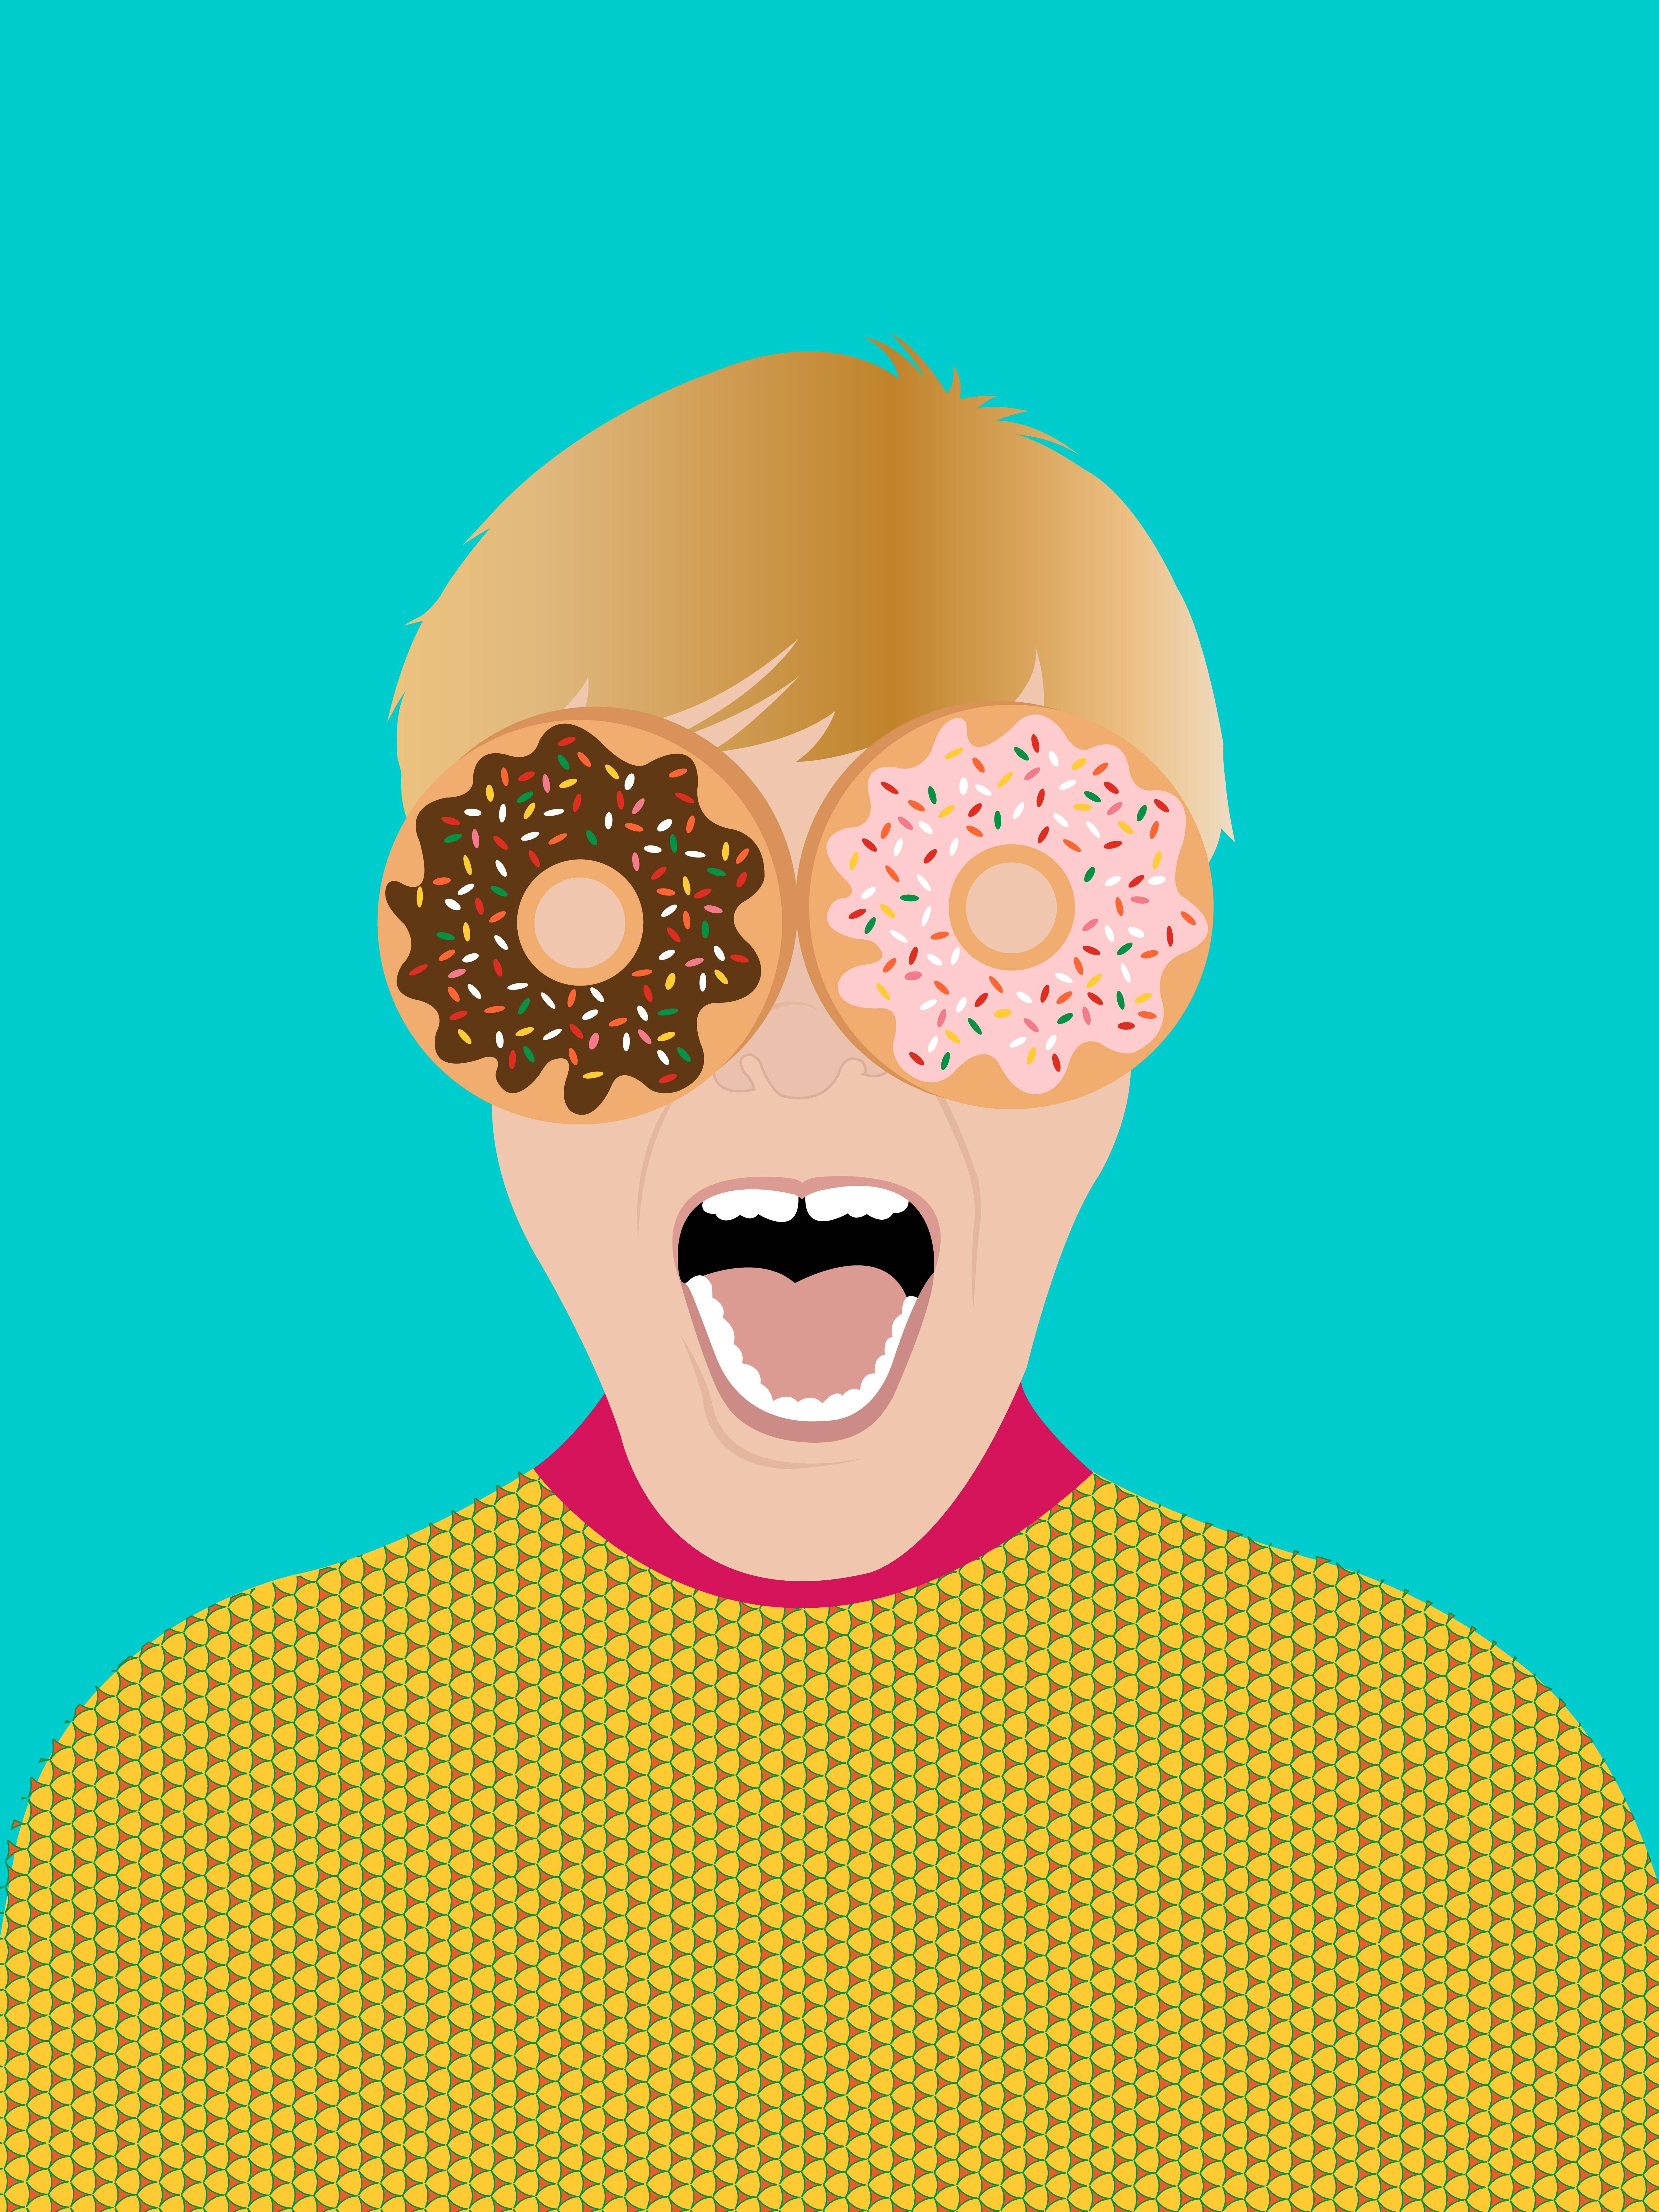 Elton John: Donut Go Breaking My Heart - Print by Avery Nejam